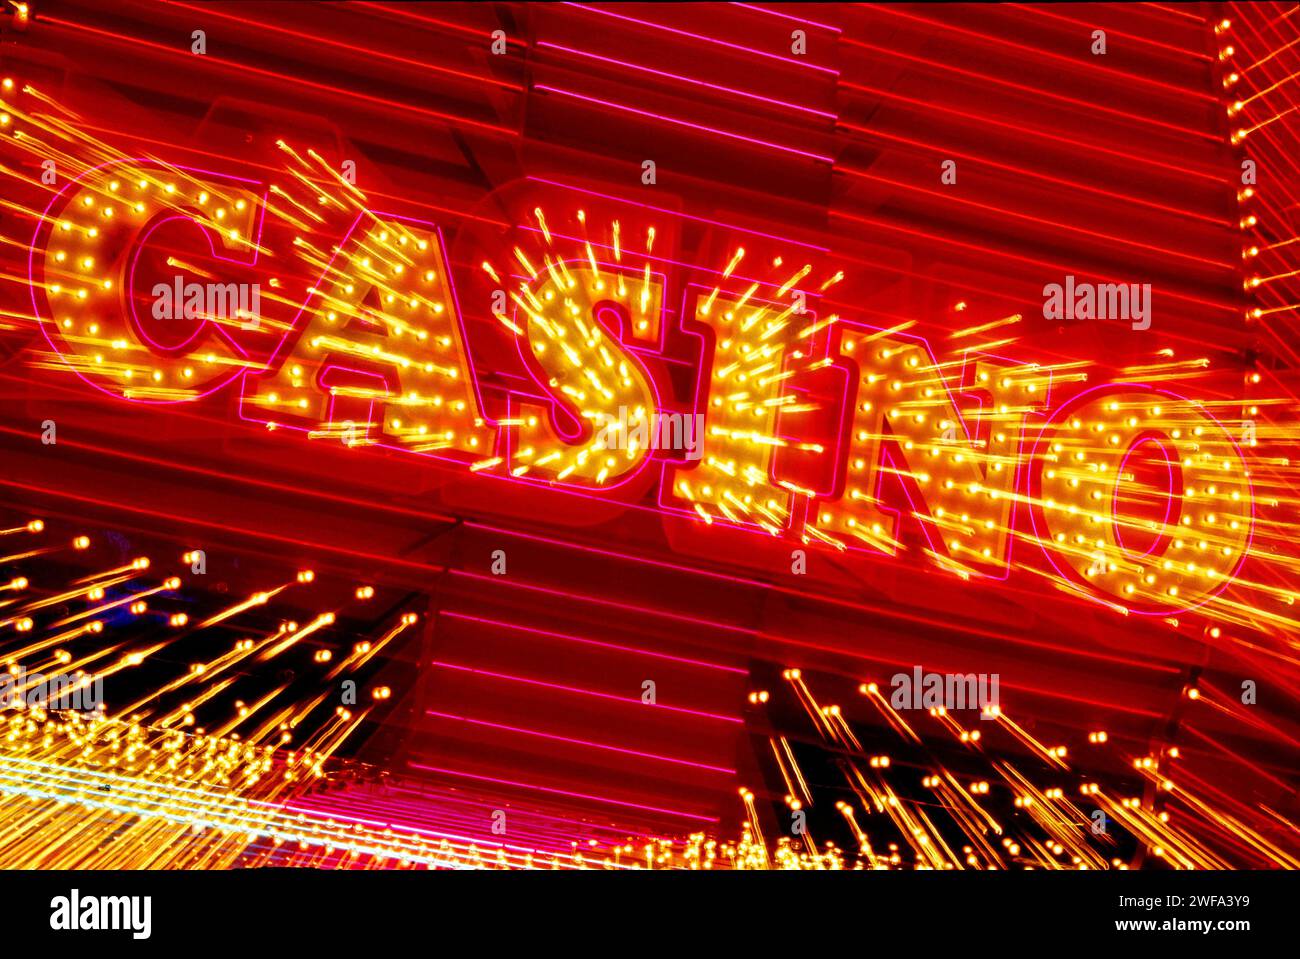 Das hell beleuchtete Schild eines Las Vewgas Casinos leuchtet intensiv in Rot- und Gelbtönen und dominiert die Nacht mit seinen lebhaften Farben und blendenden Lichtern Stockfoto